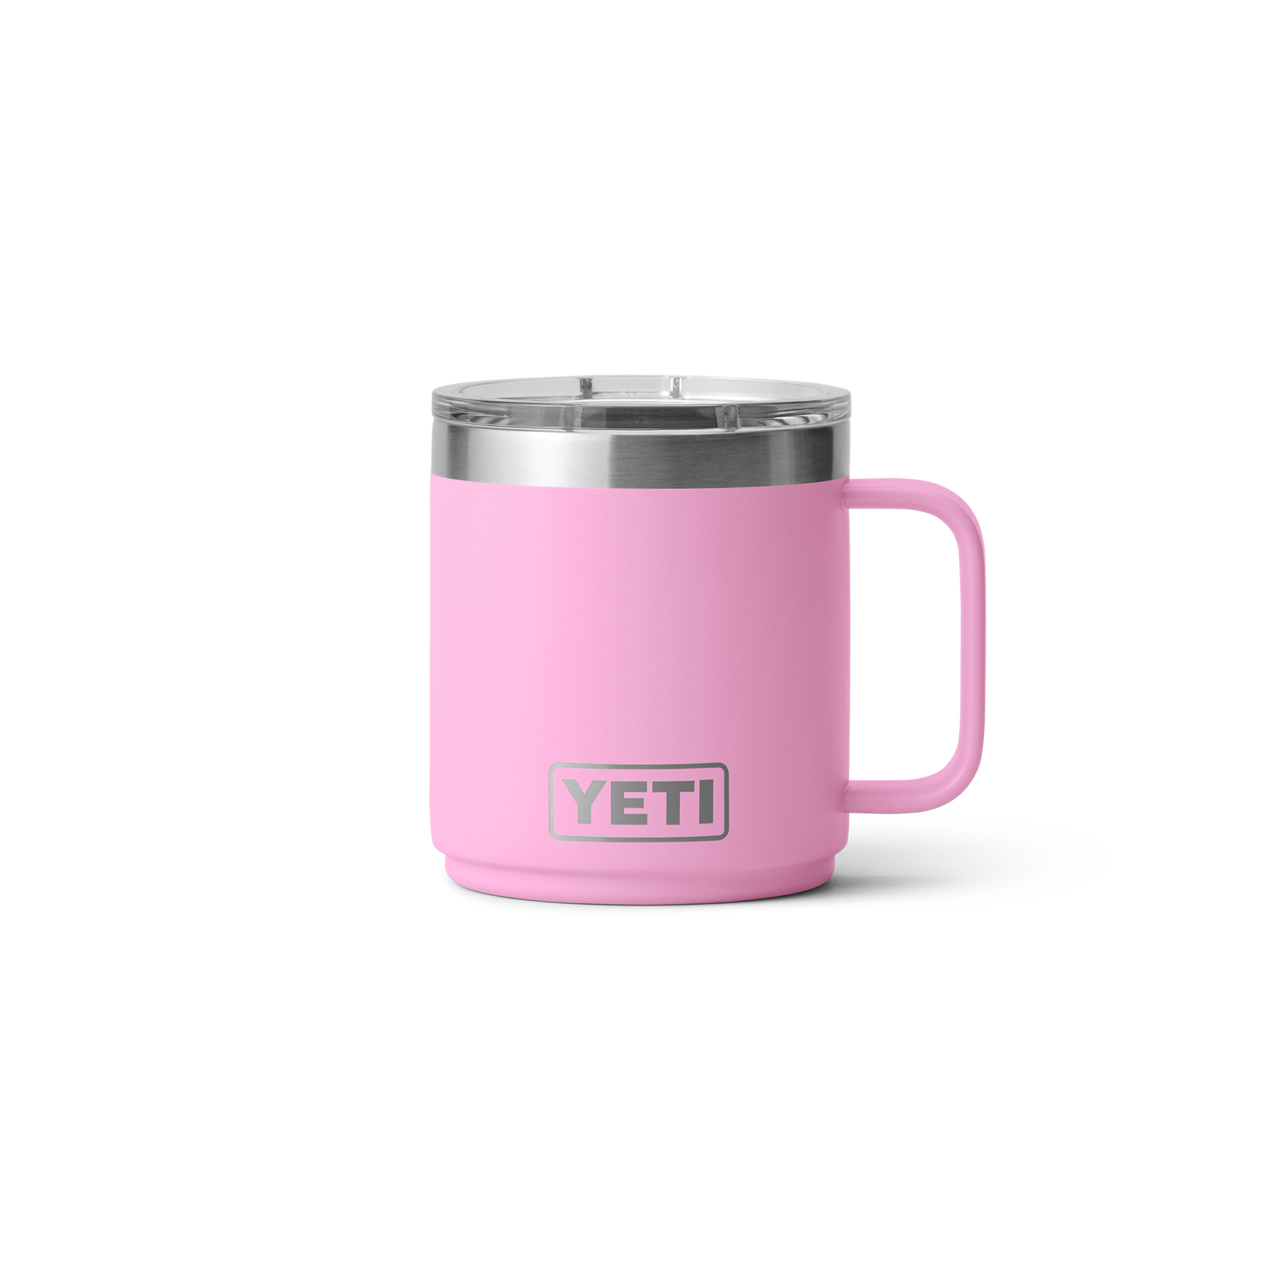 YETI Rambler 10 Oz Mug Power Pink